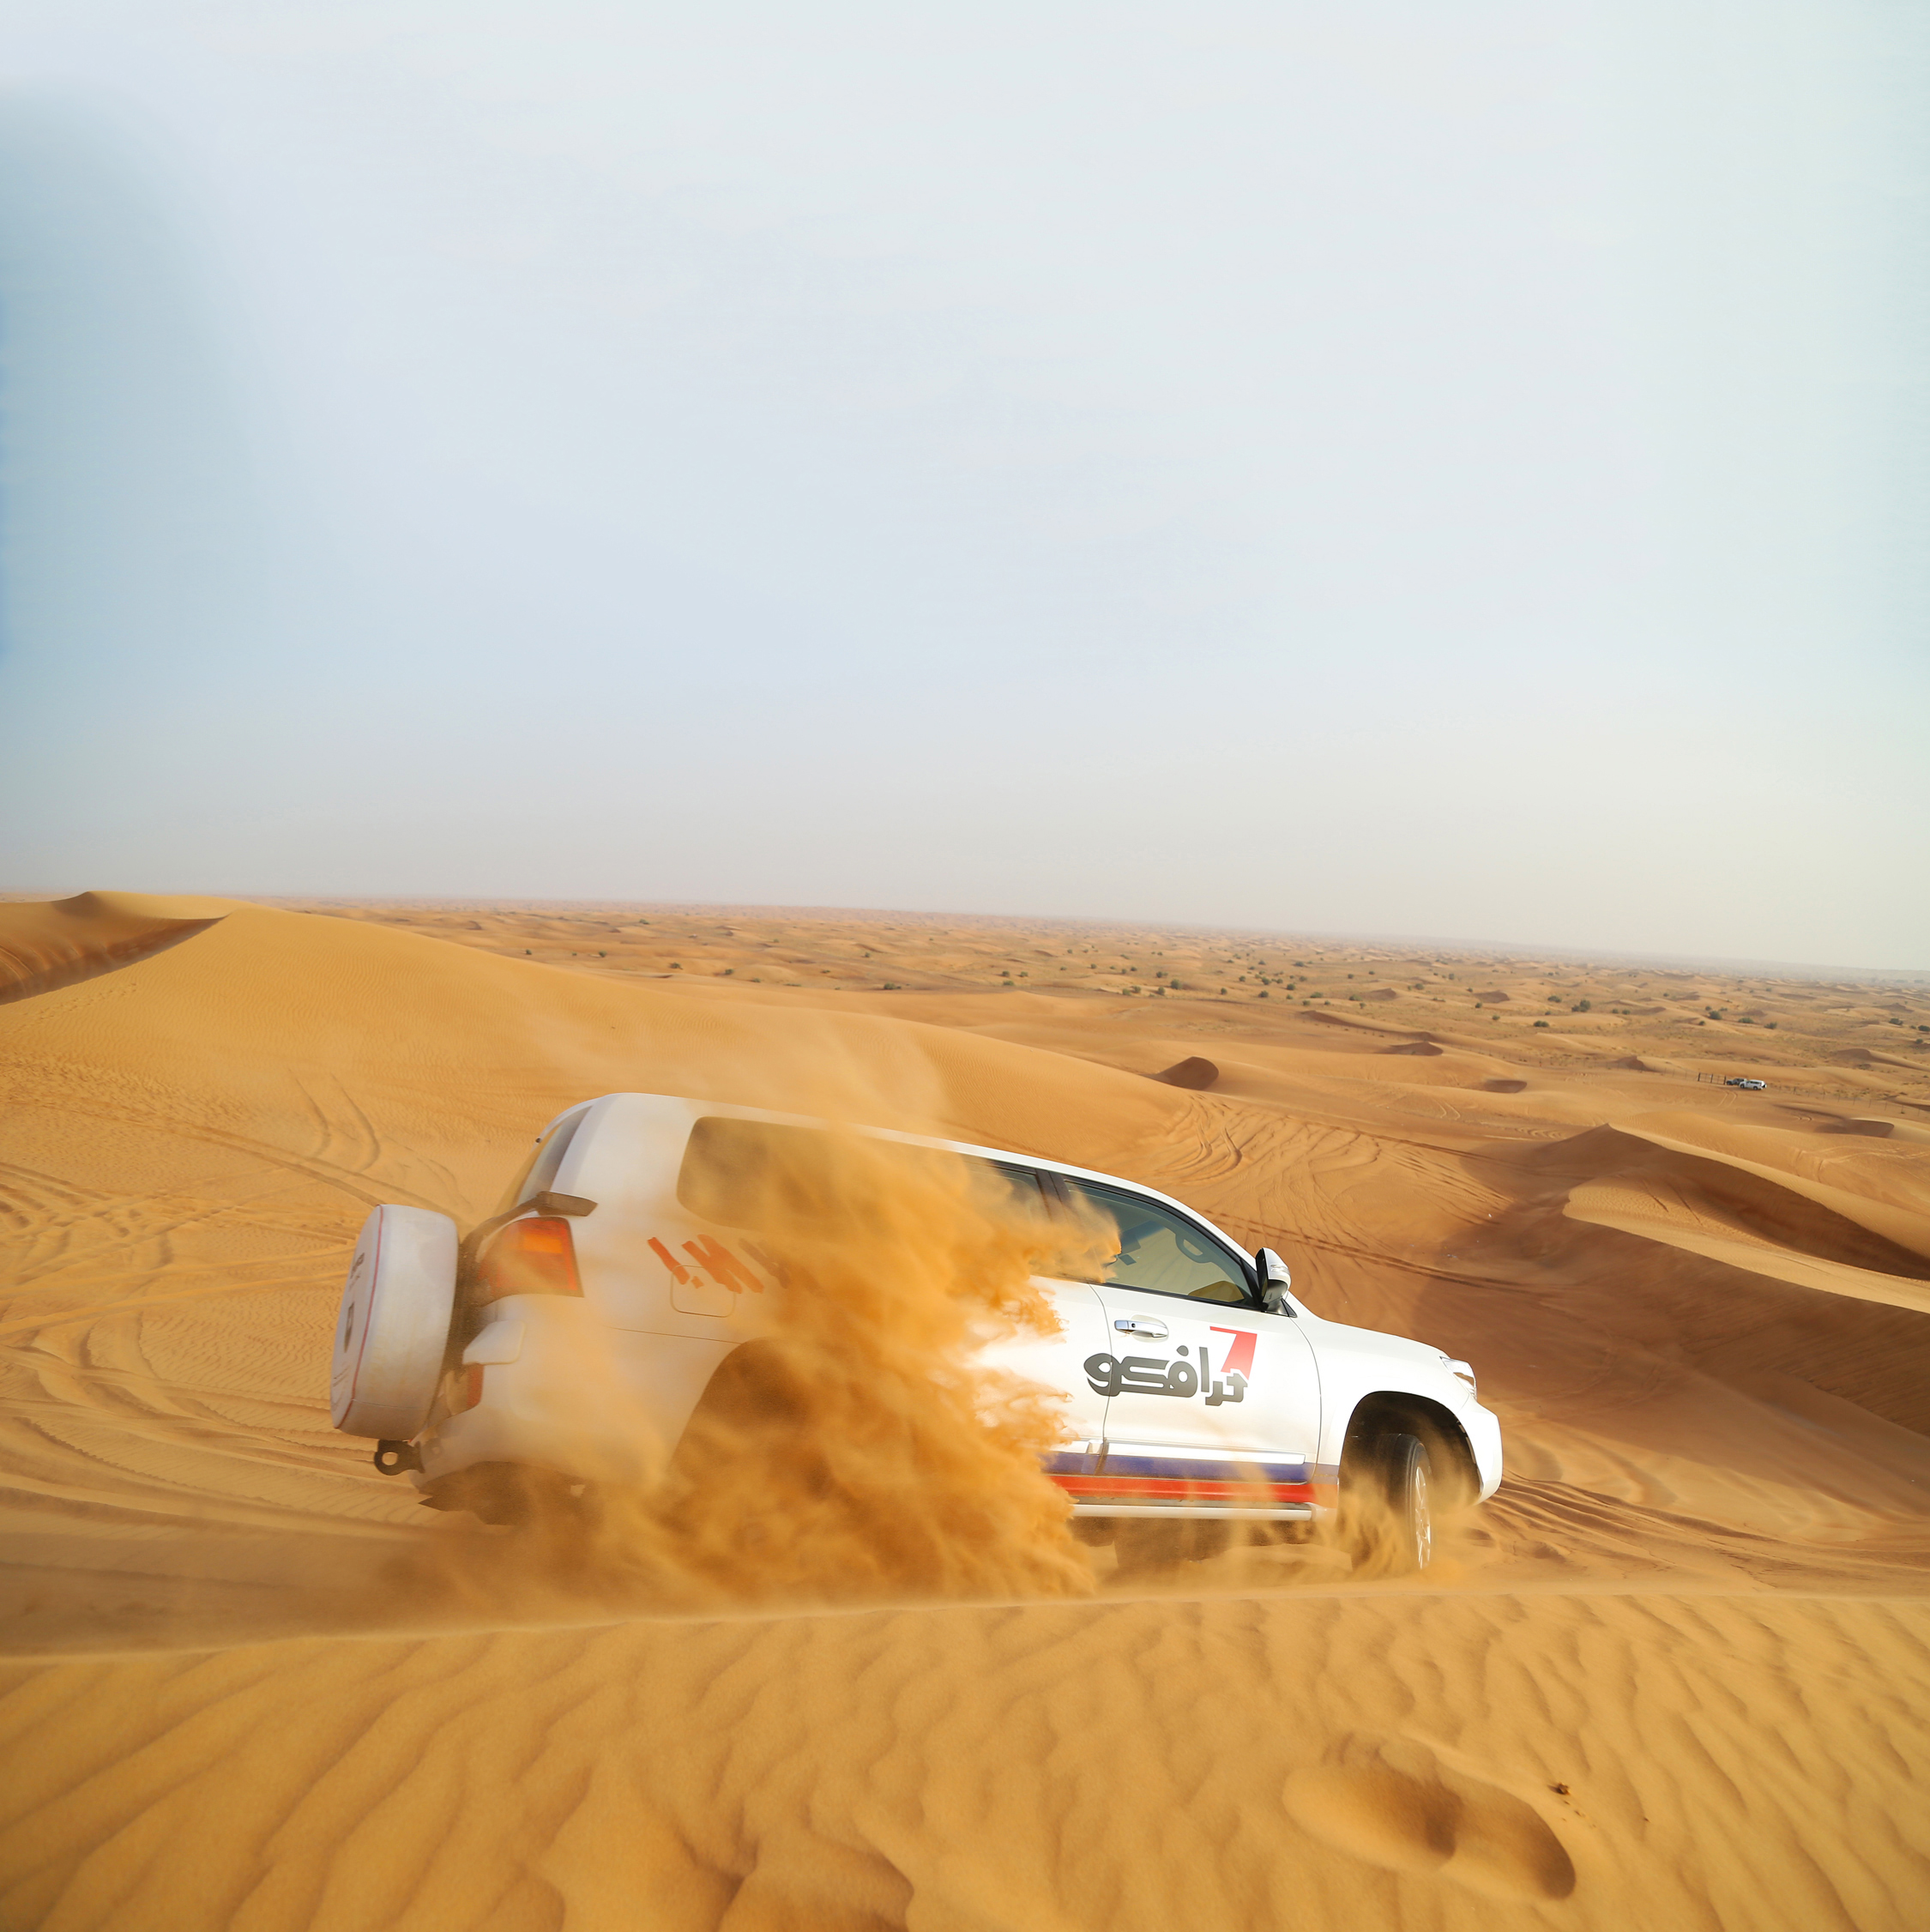 Jeep-Tour in die Wüste Dubais mit der Mein Schiff Flotte